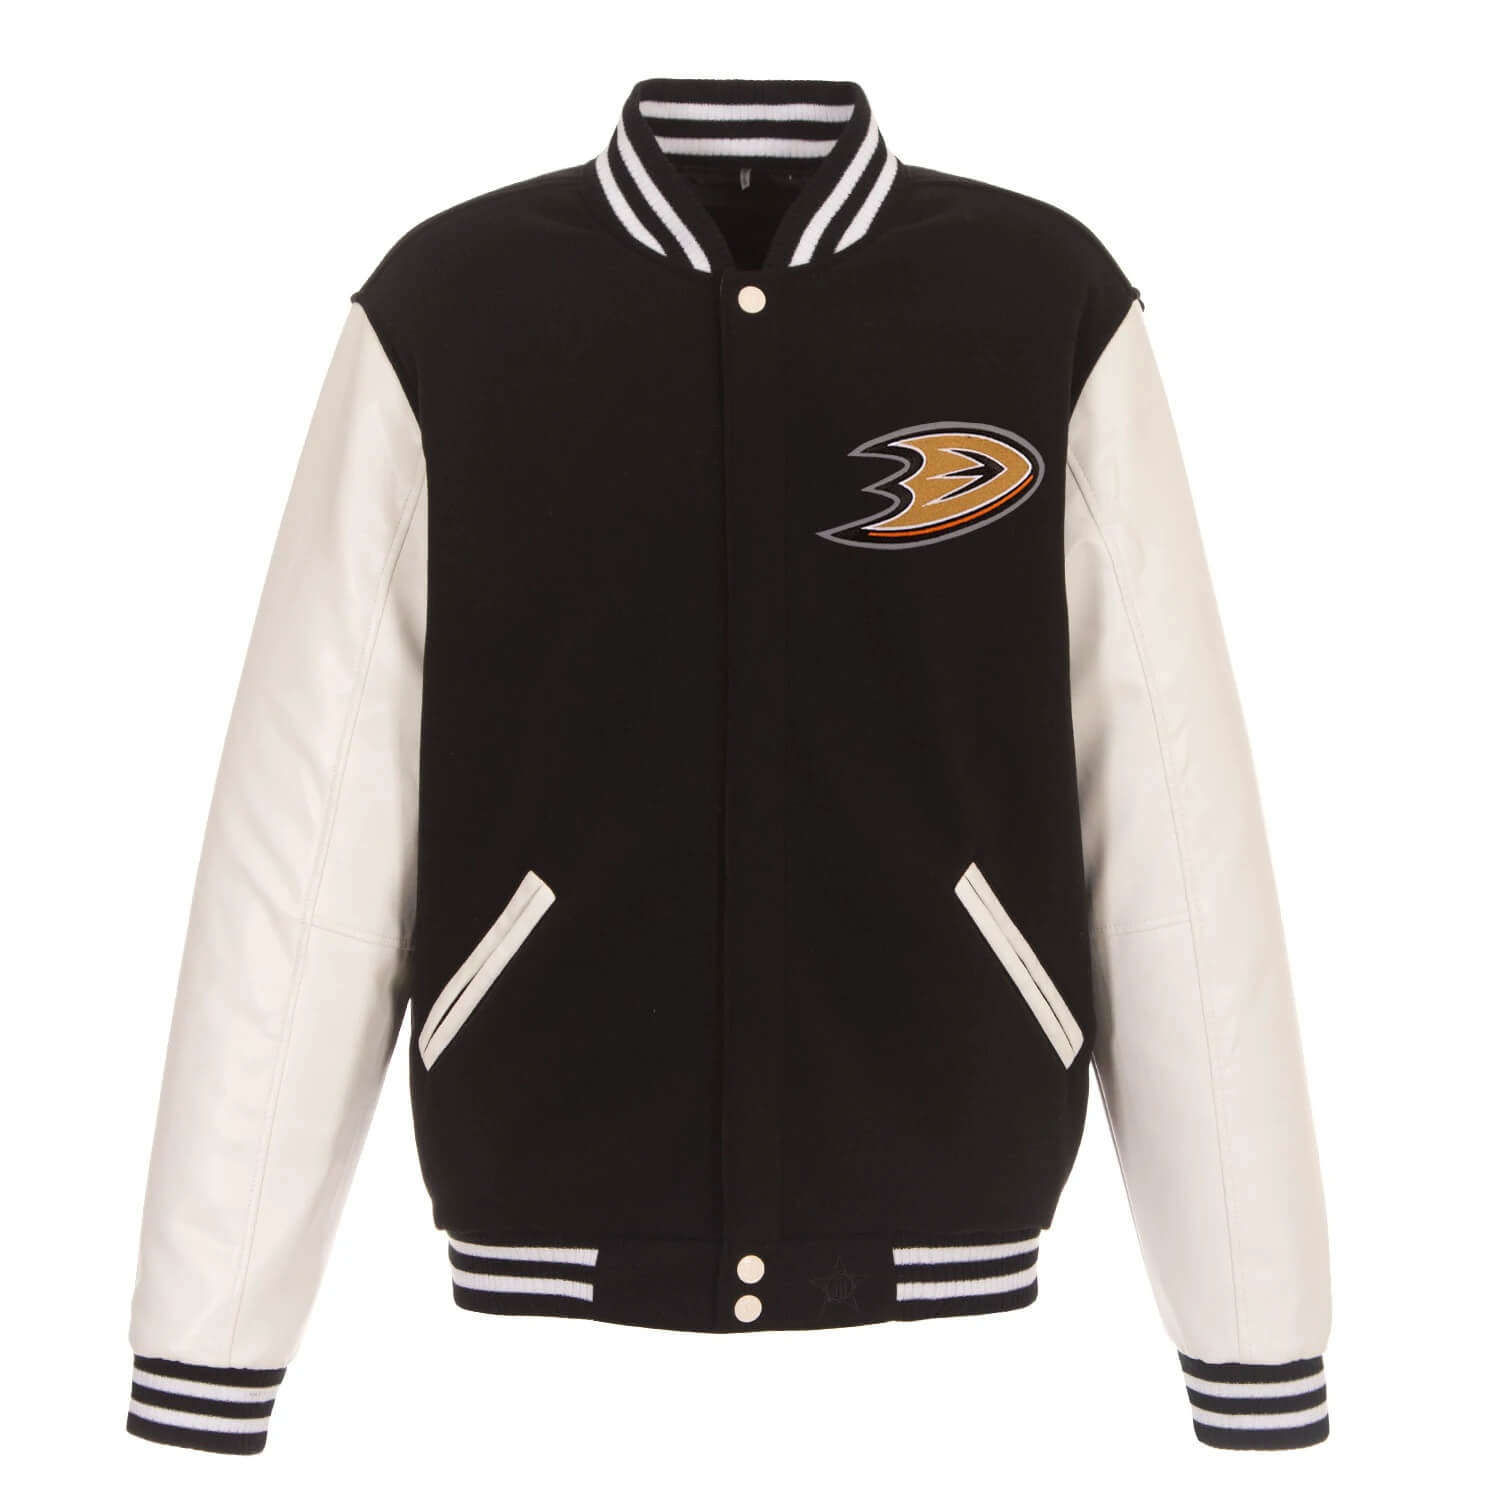 Wool/Leather Anaheim Ducks Varsity Black and Orange Jacket